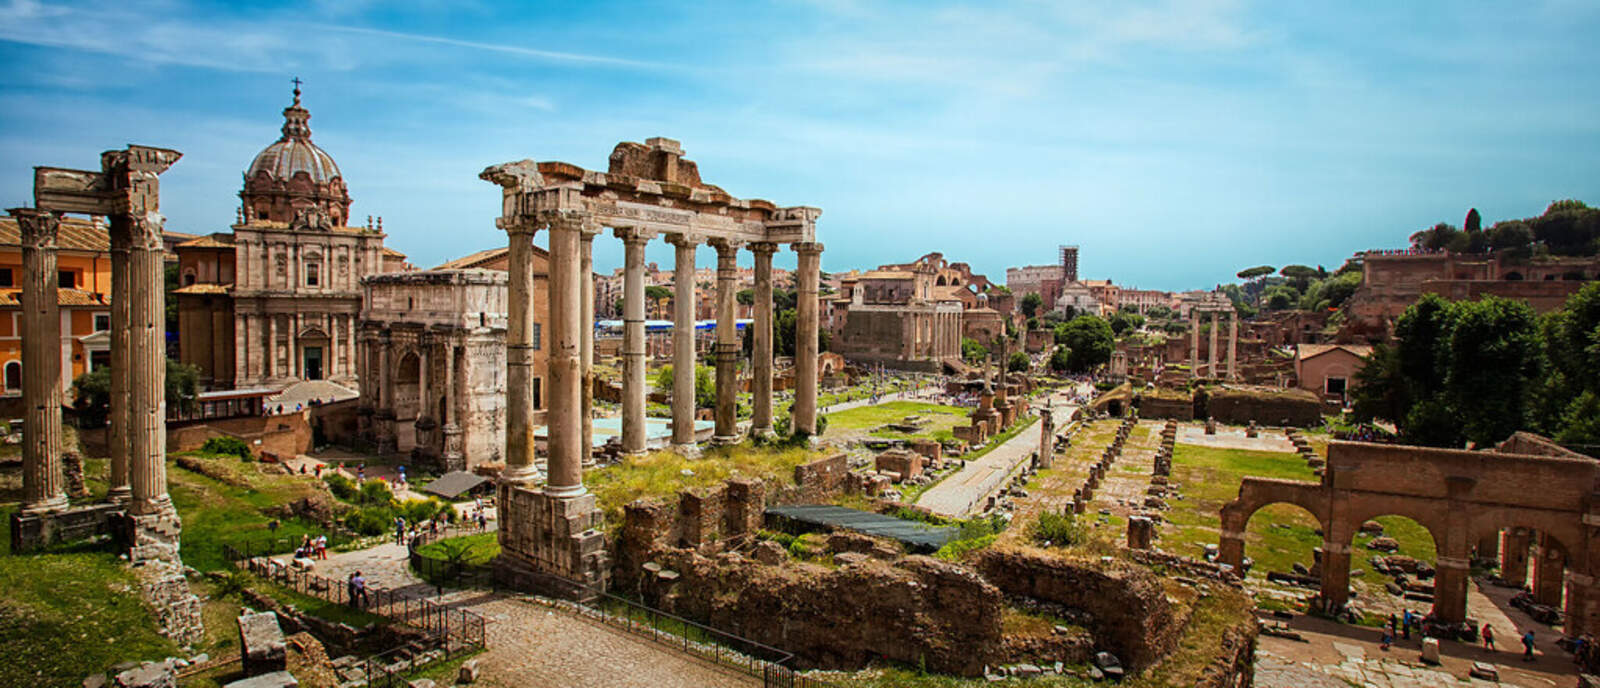 Les restes de la Roma antiga